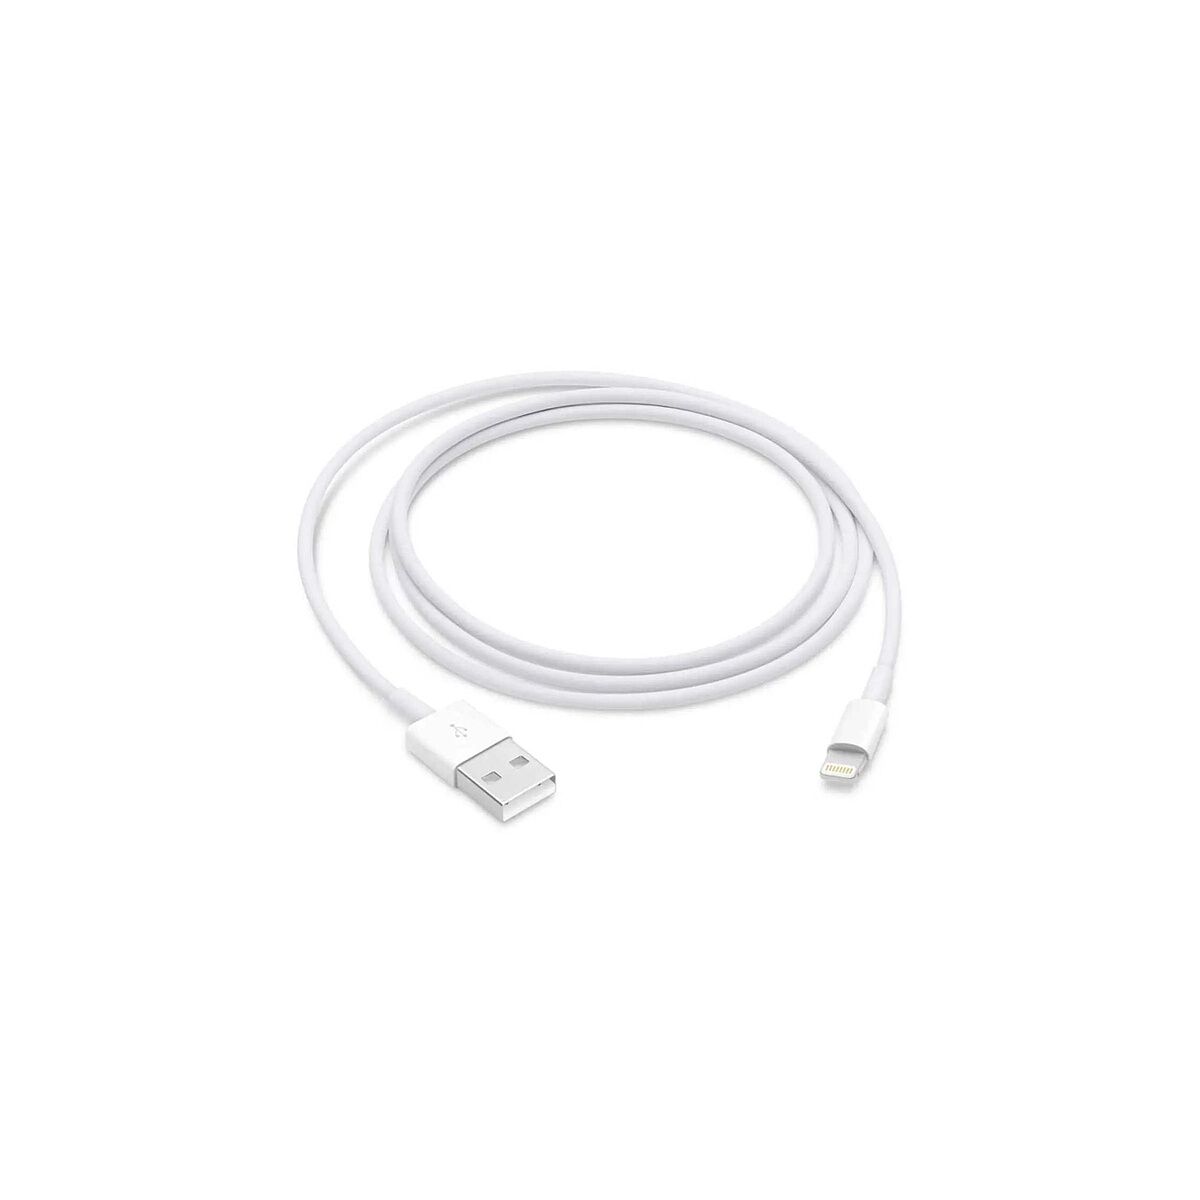 Kép 2/2 - Apple Lightning - USB adat- és töltőkábel 0.5m, fehér EU ME291